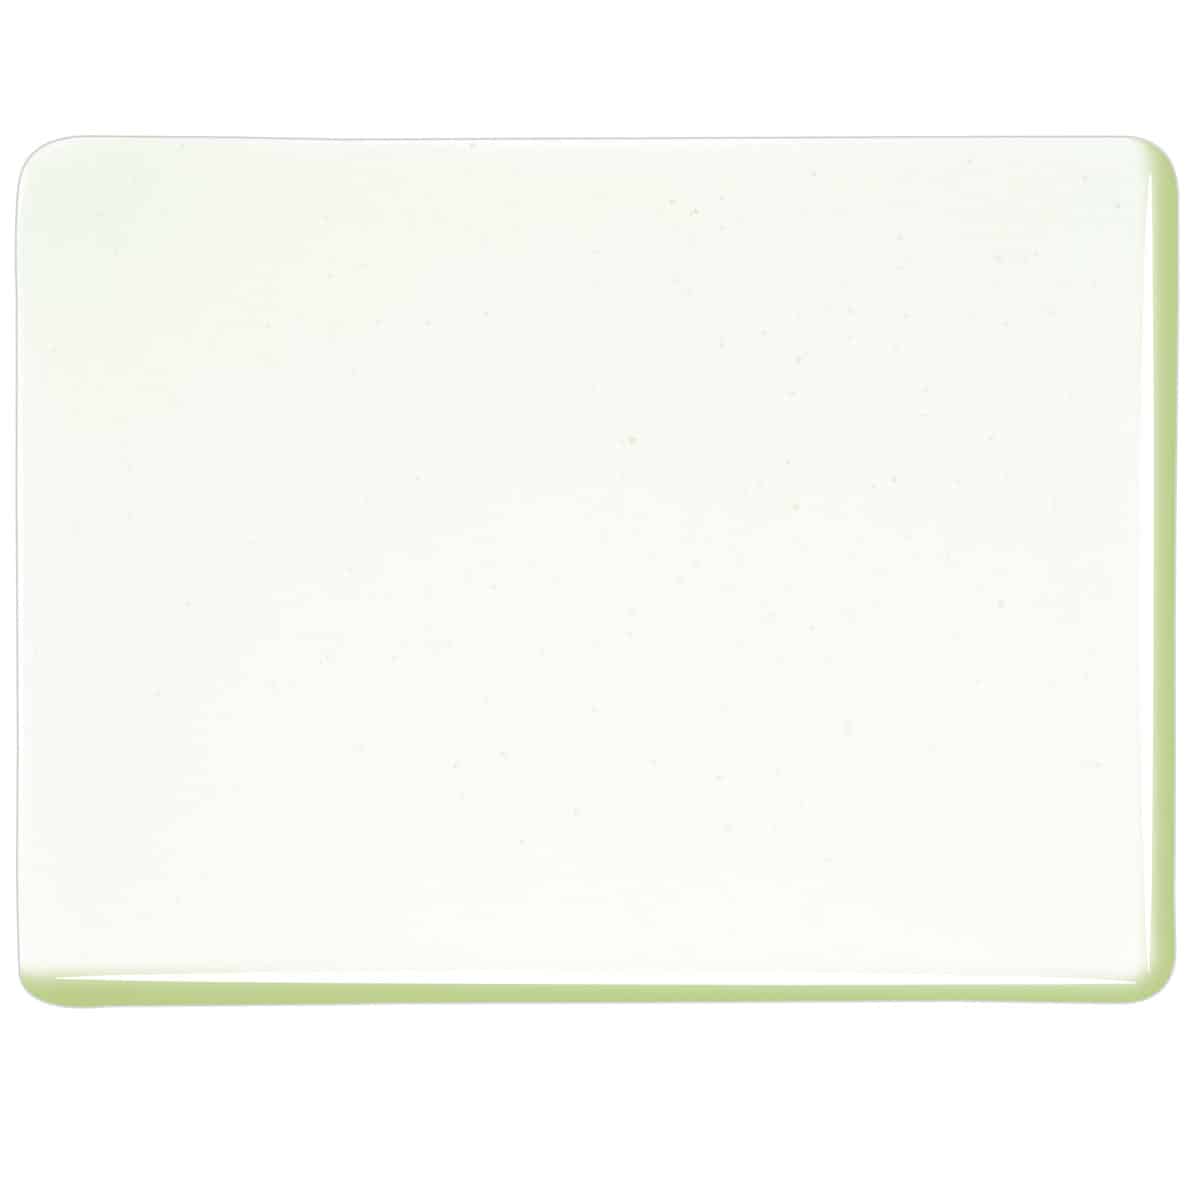 001977 Pine Green Tint transparent sheet glass swatch